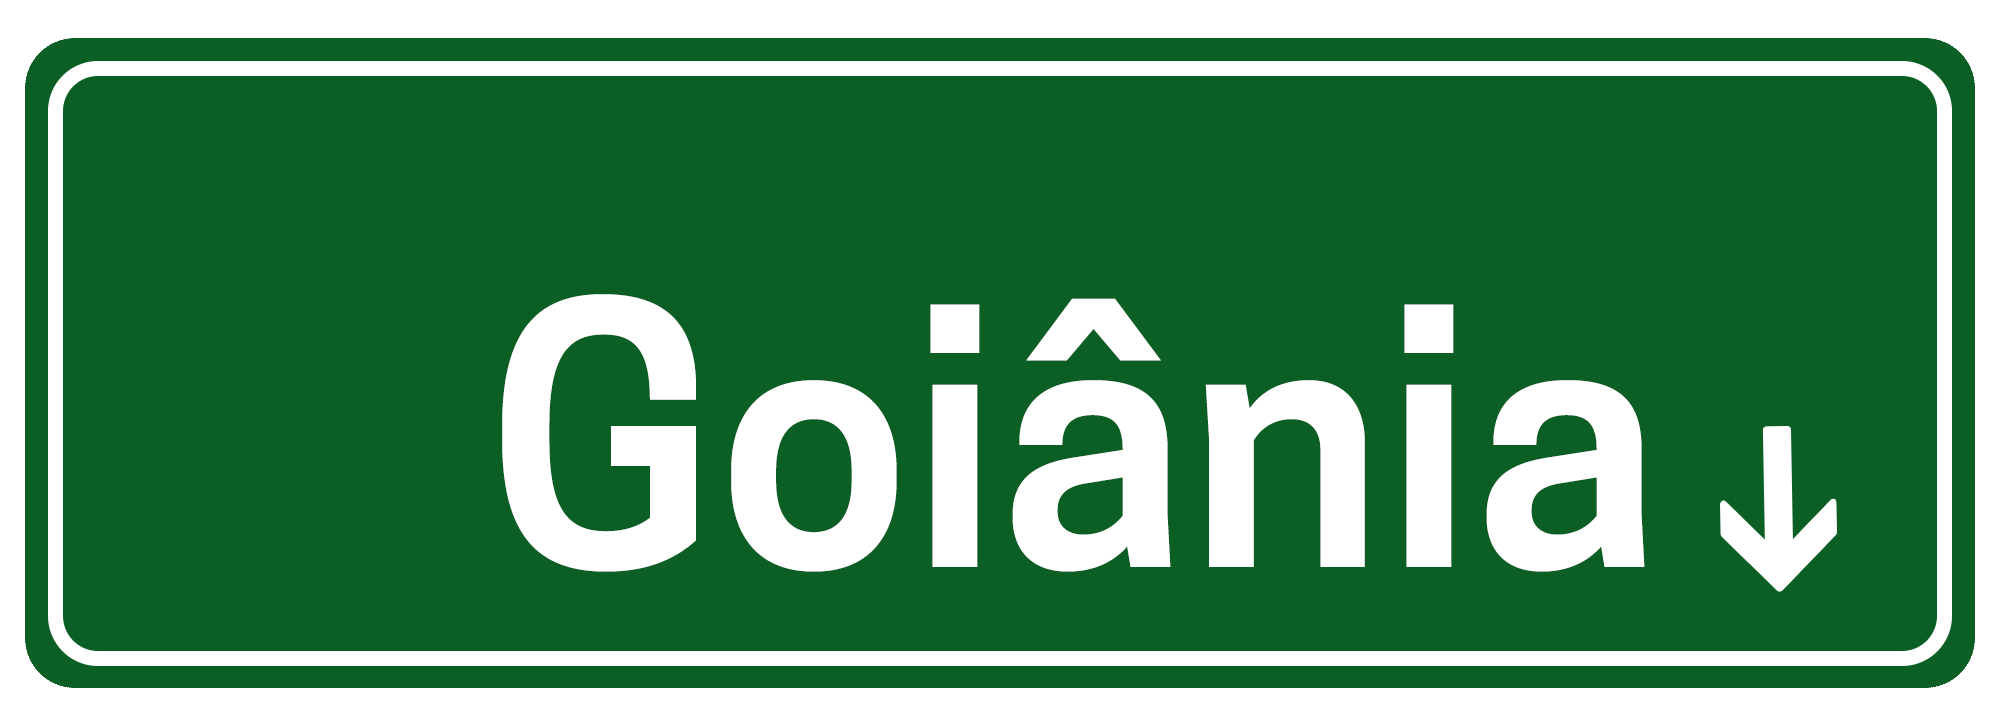 Illustração imitando placa de rua escrito "O que fazer em Goiânia"